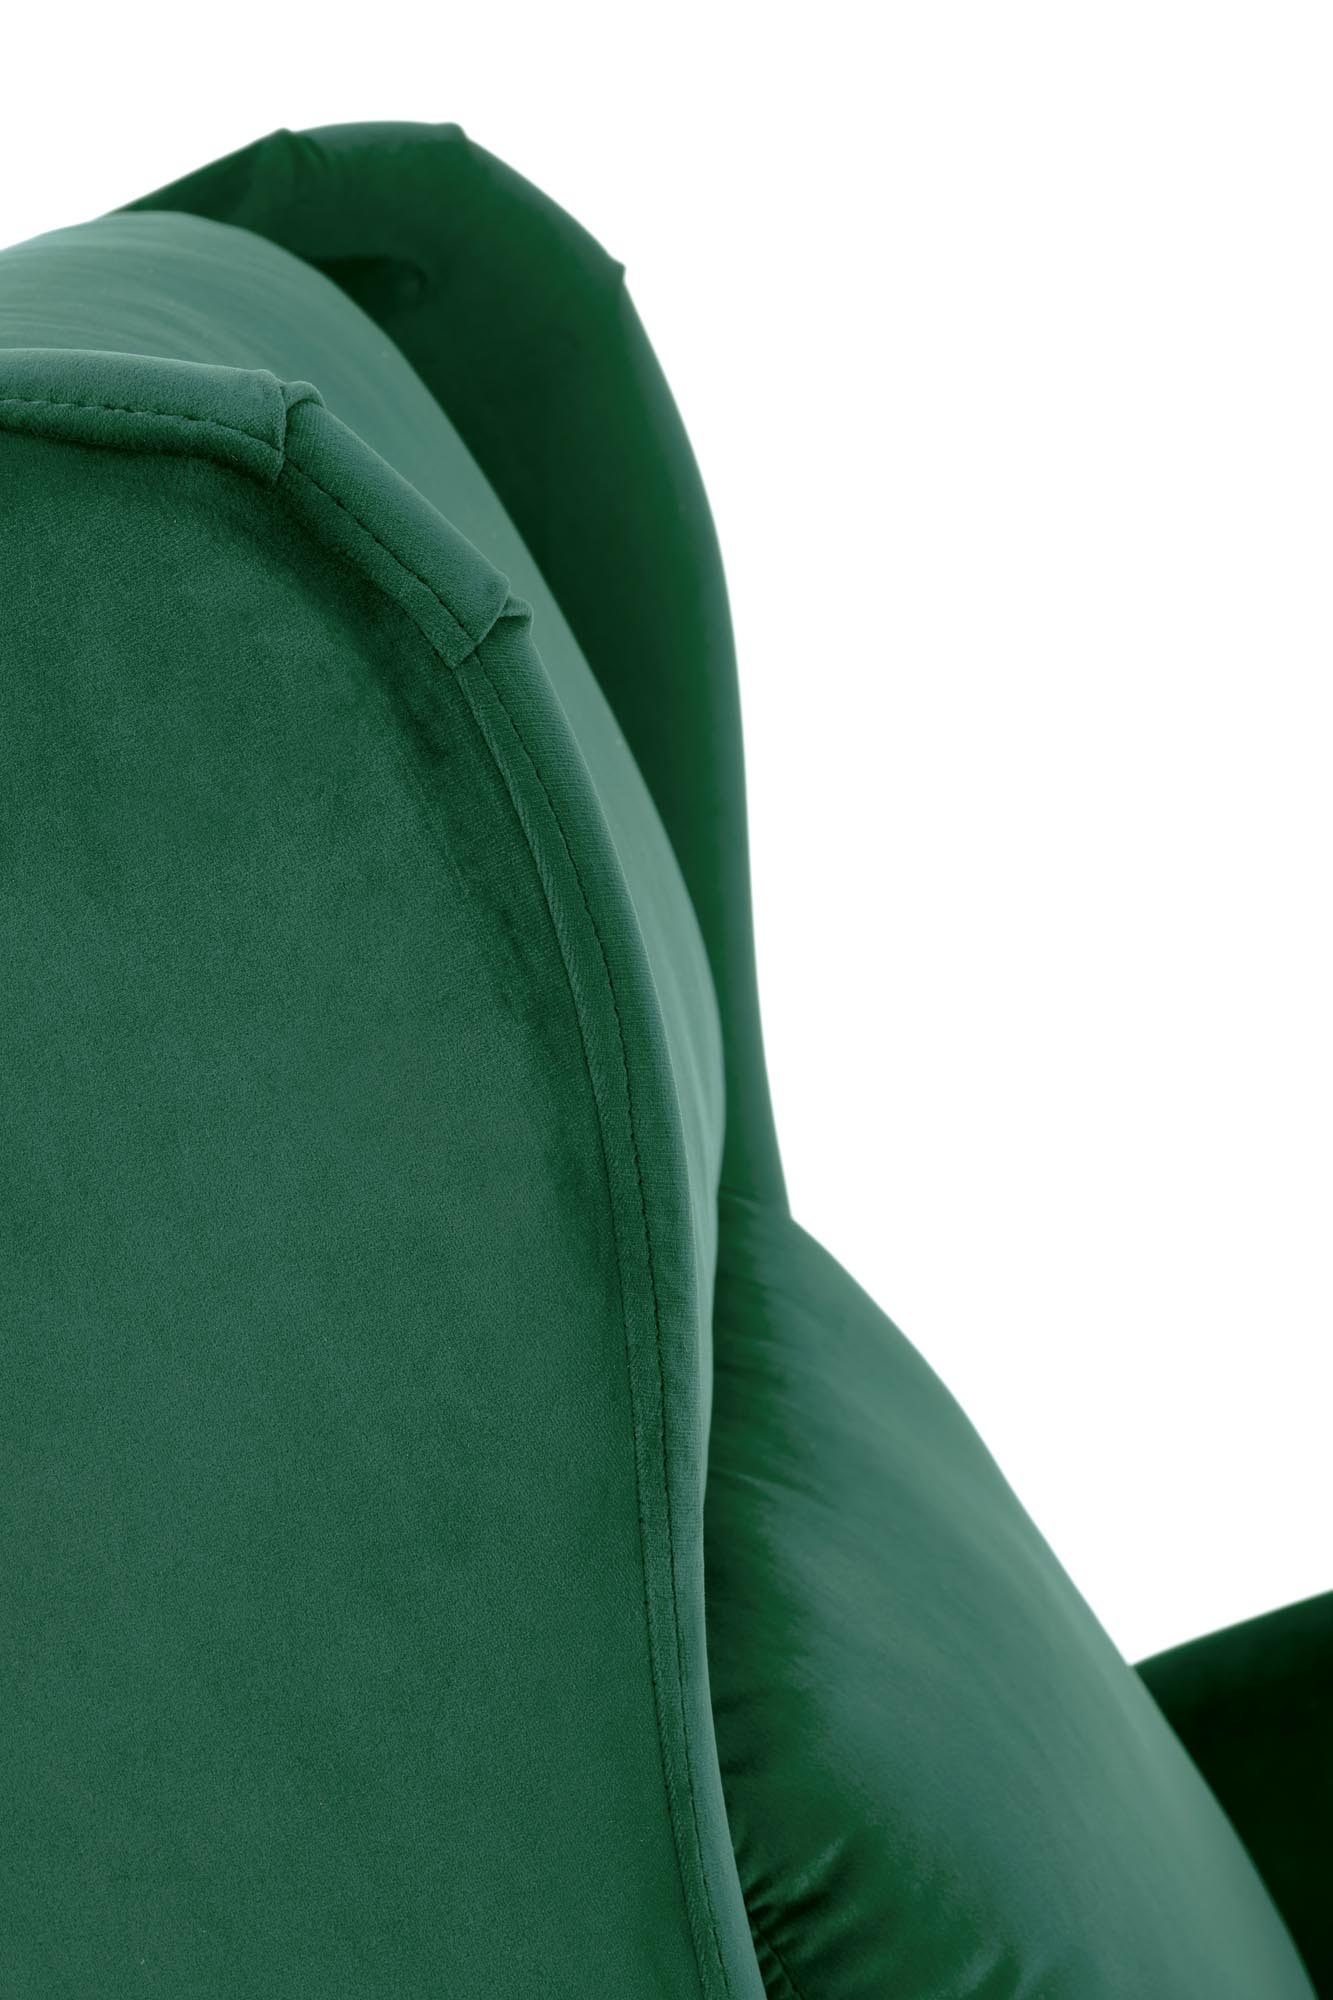 AGUSTIN 2 fotel wypoczynkowy ciemny zielony agustin 2 fotel wypoczynkowy ciemny zielony